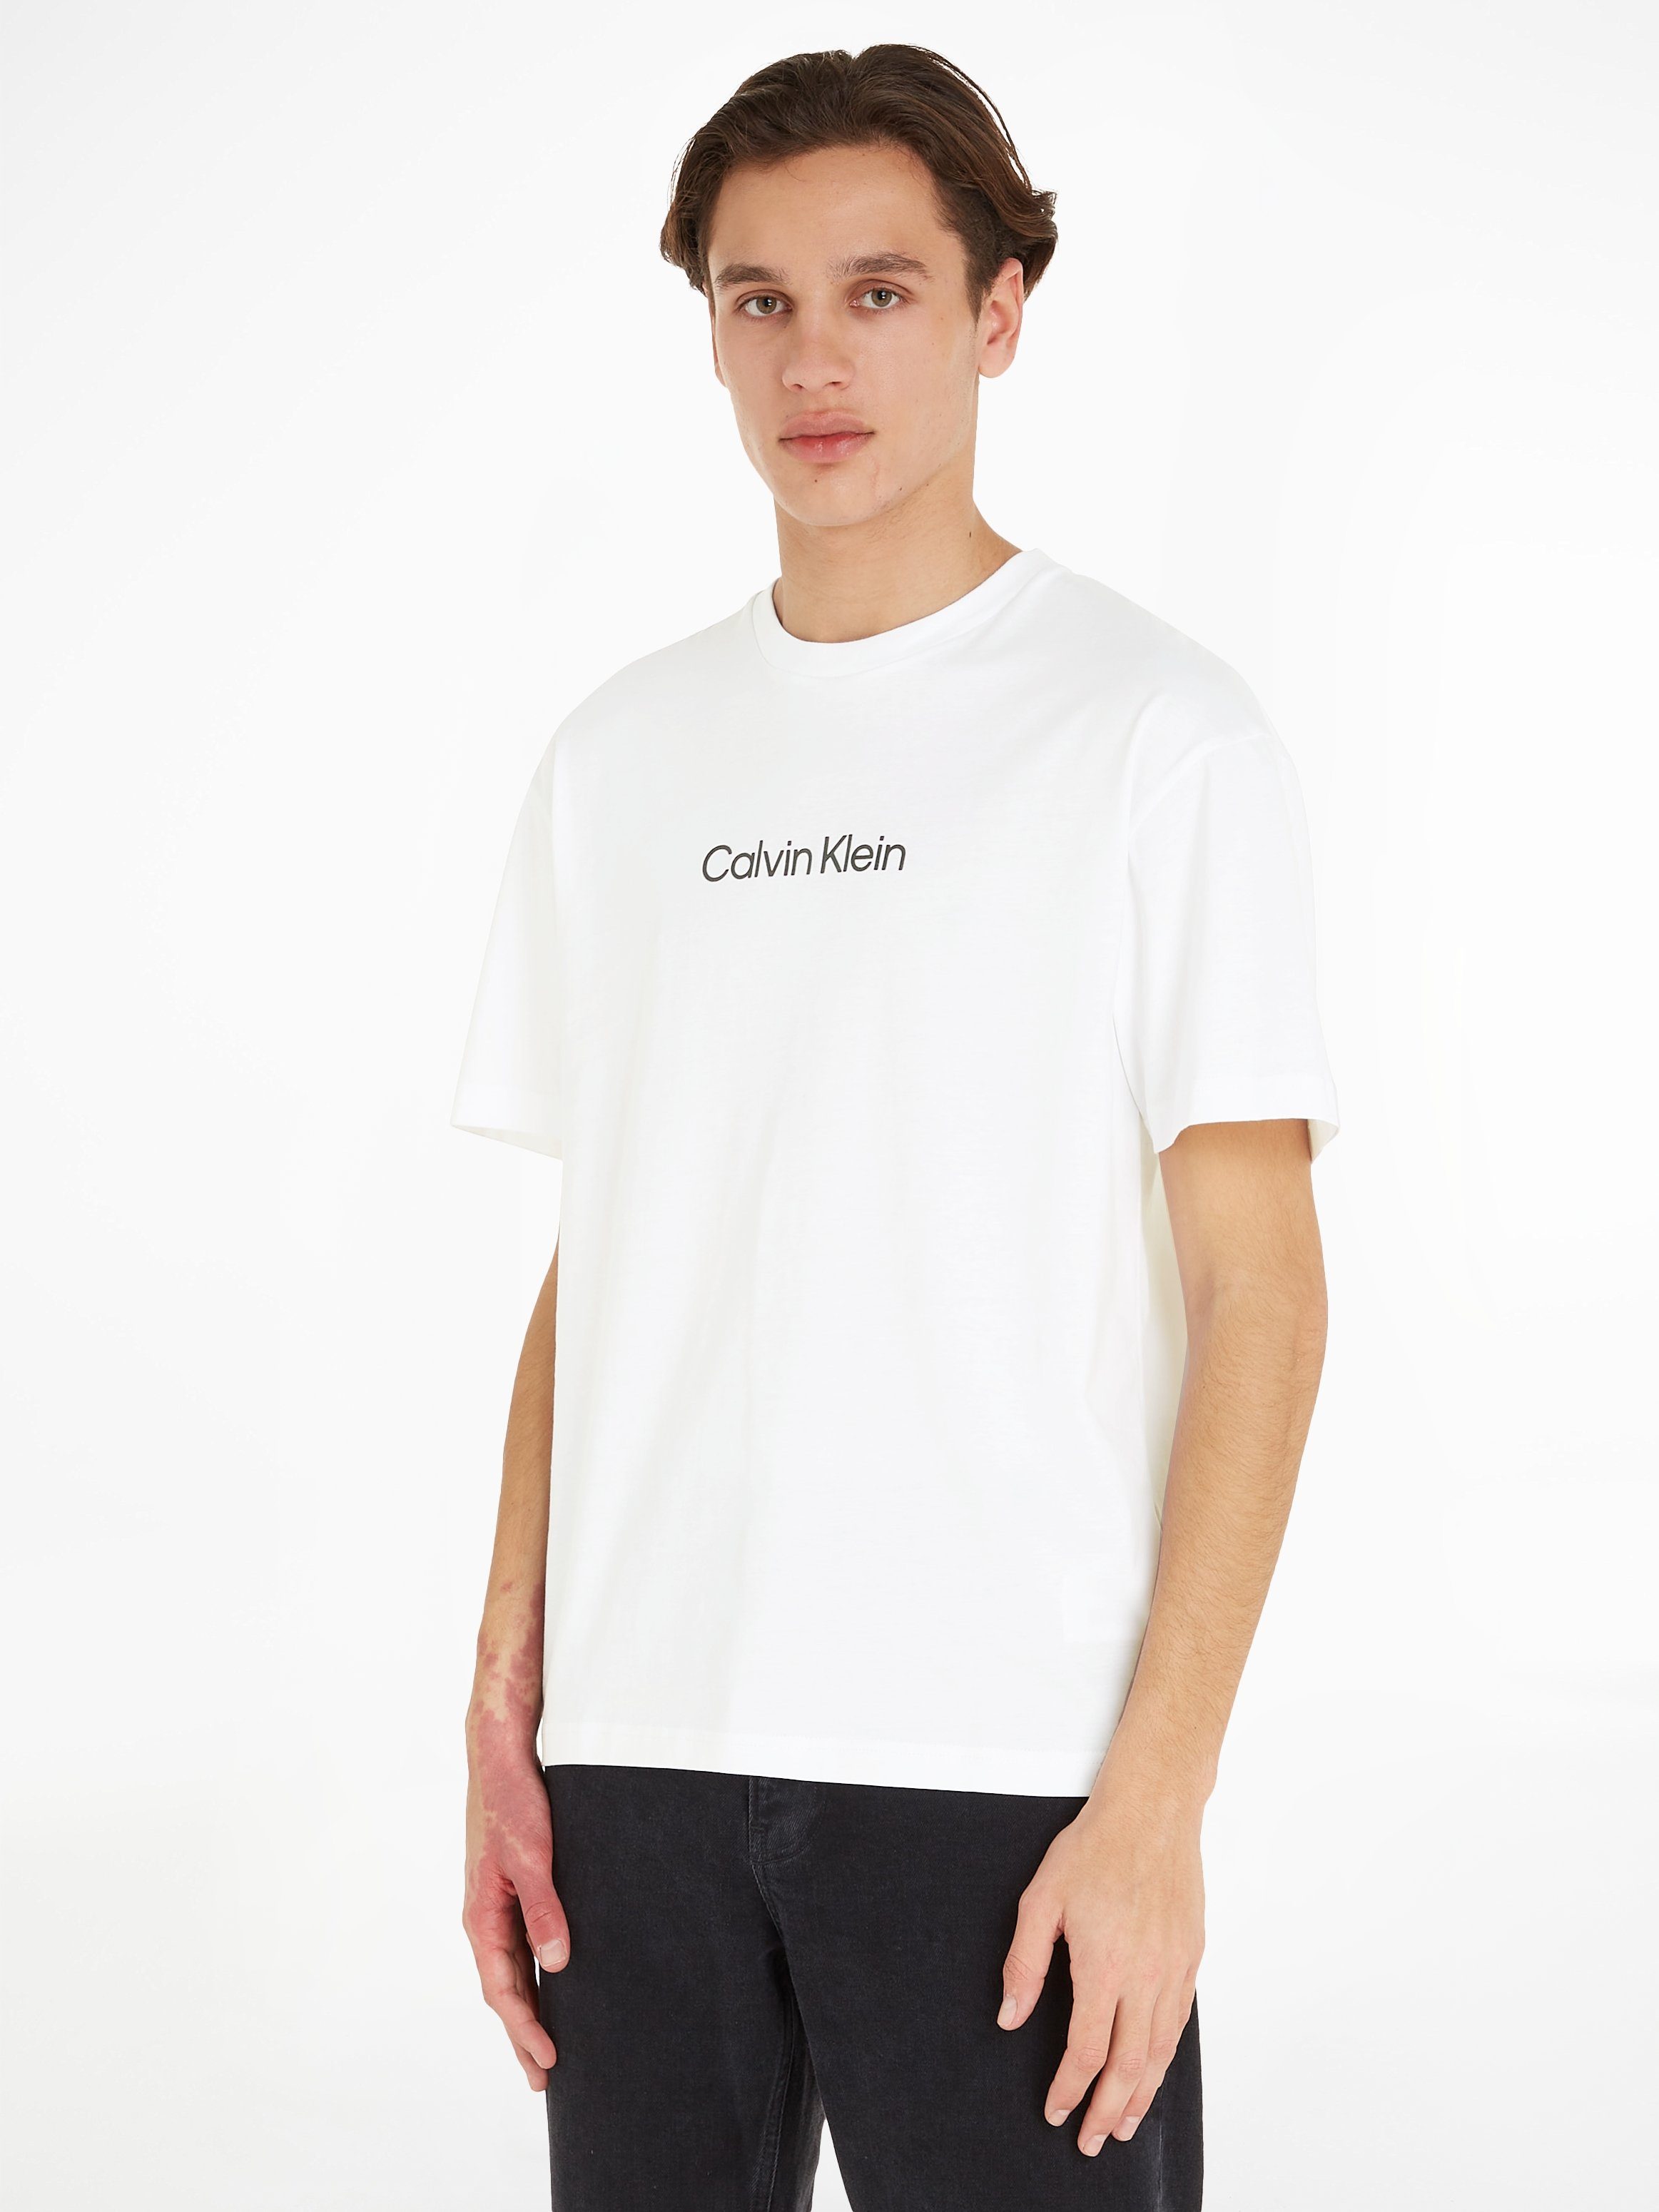 Calvin Klein mit White LOGO COMFORT HERO Bright aufgedrucktem T-Shirt Markenlabel T-SHIRT